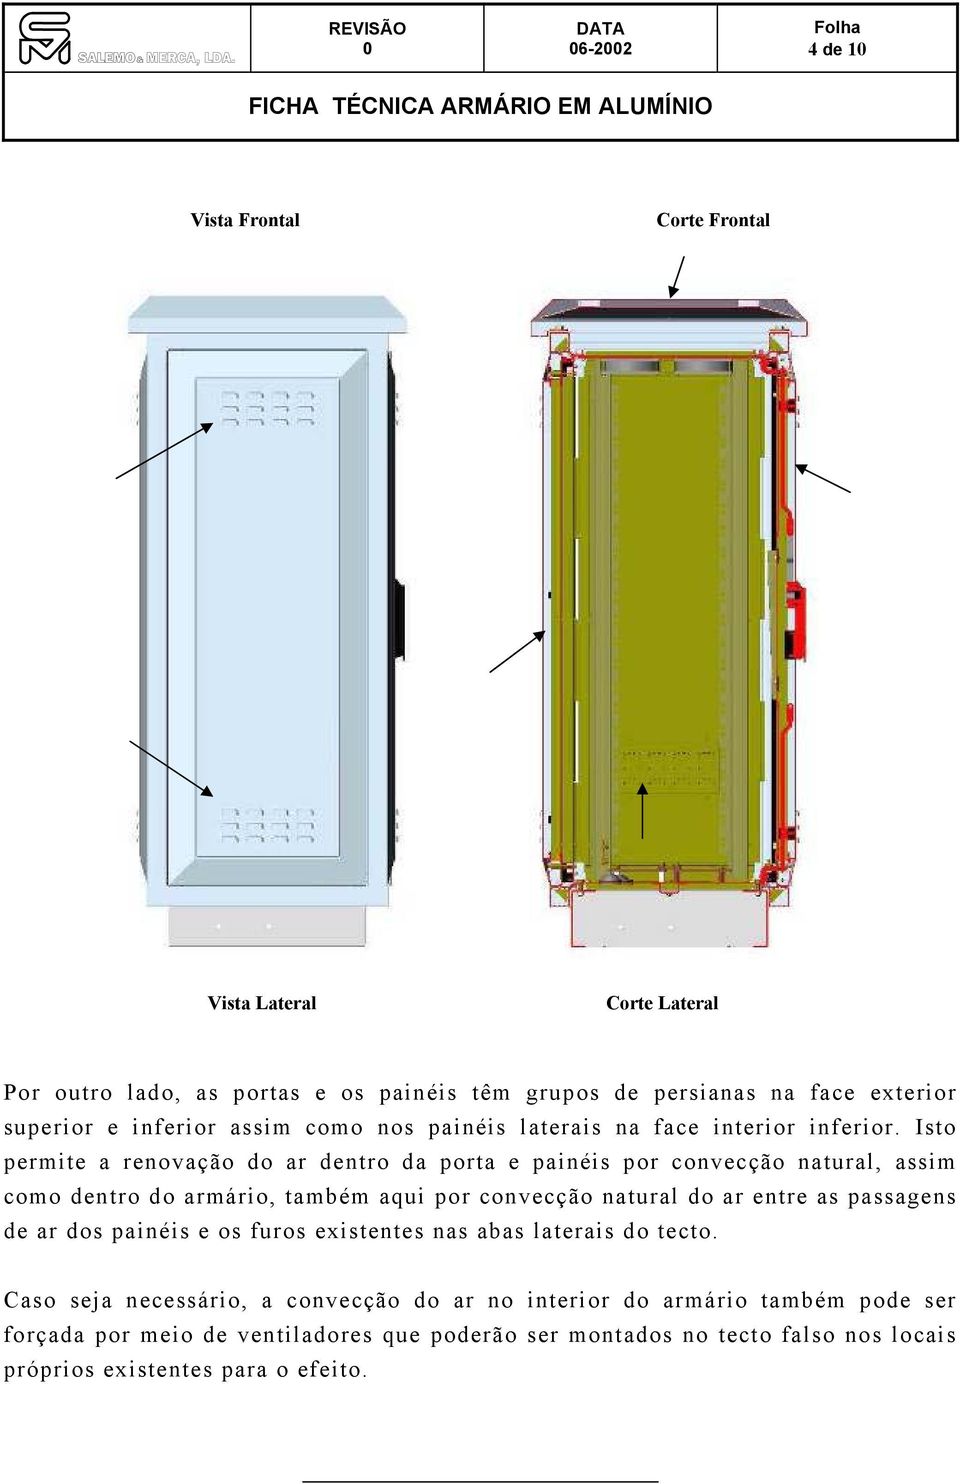 Isto permite a renovação do ar dentro da porta e painéis por convecção natural, assim como dentro do armário, também aqui por convecção natural do ar entre as